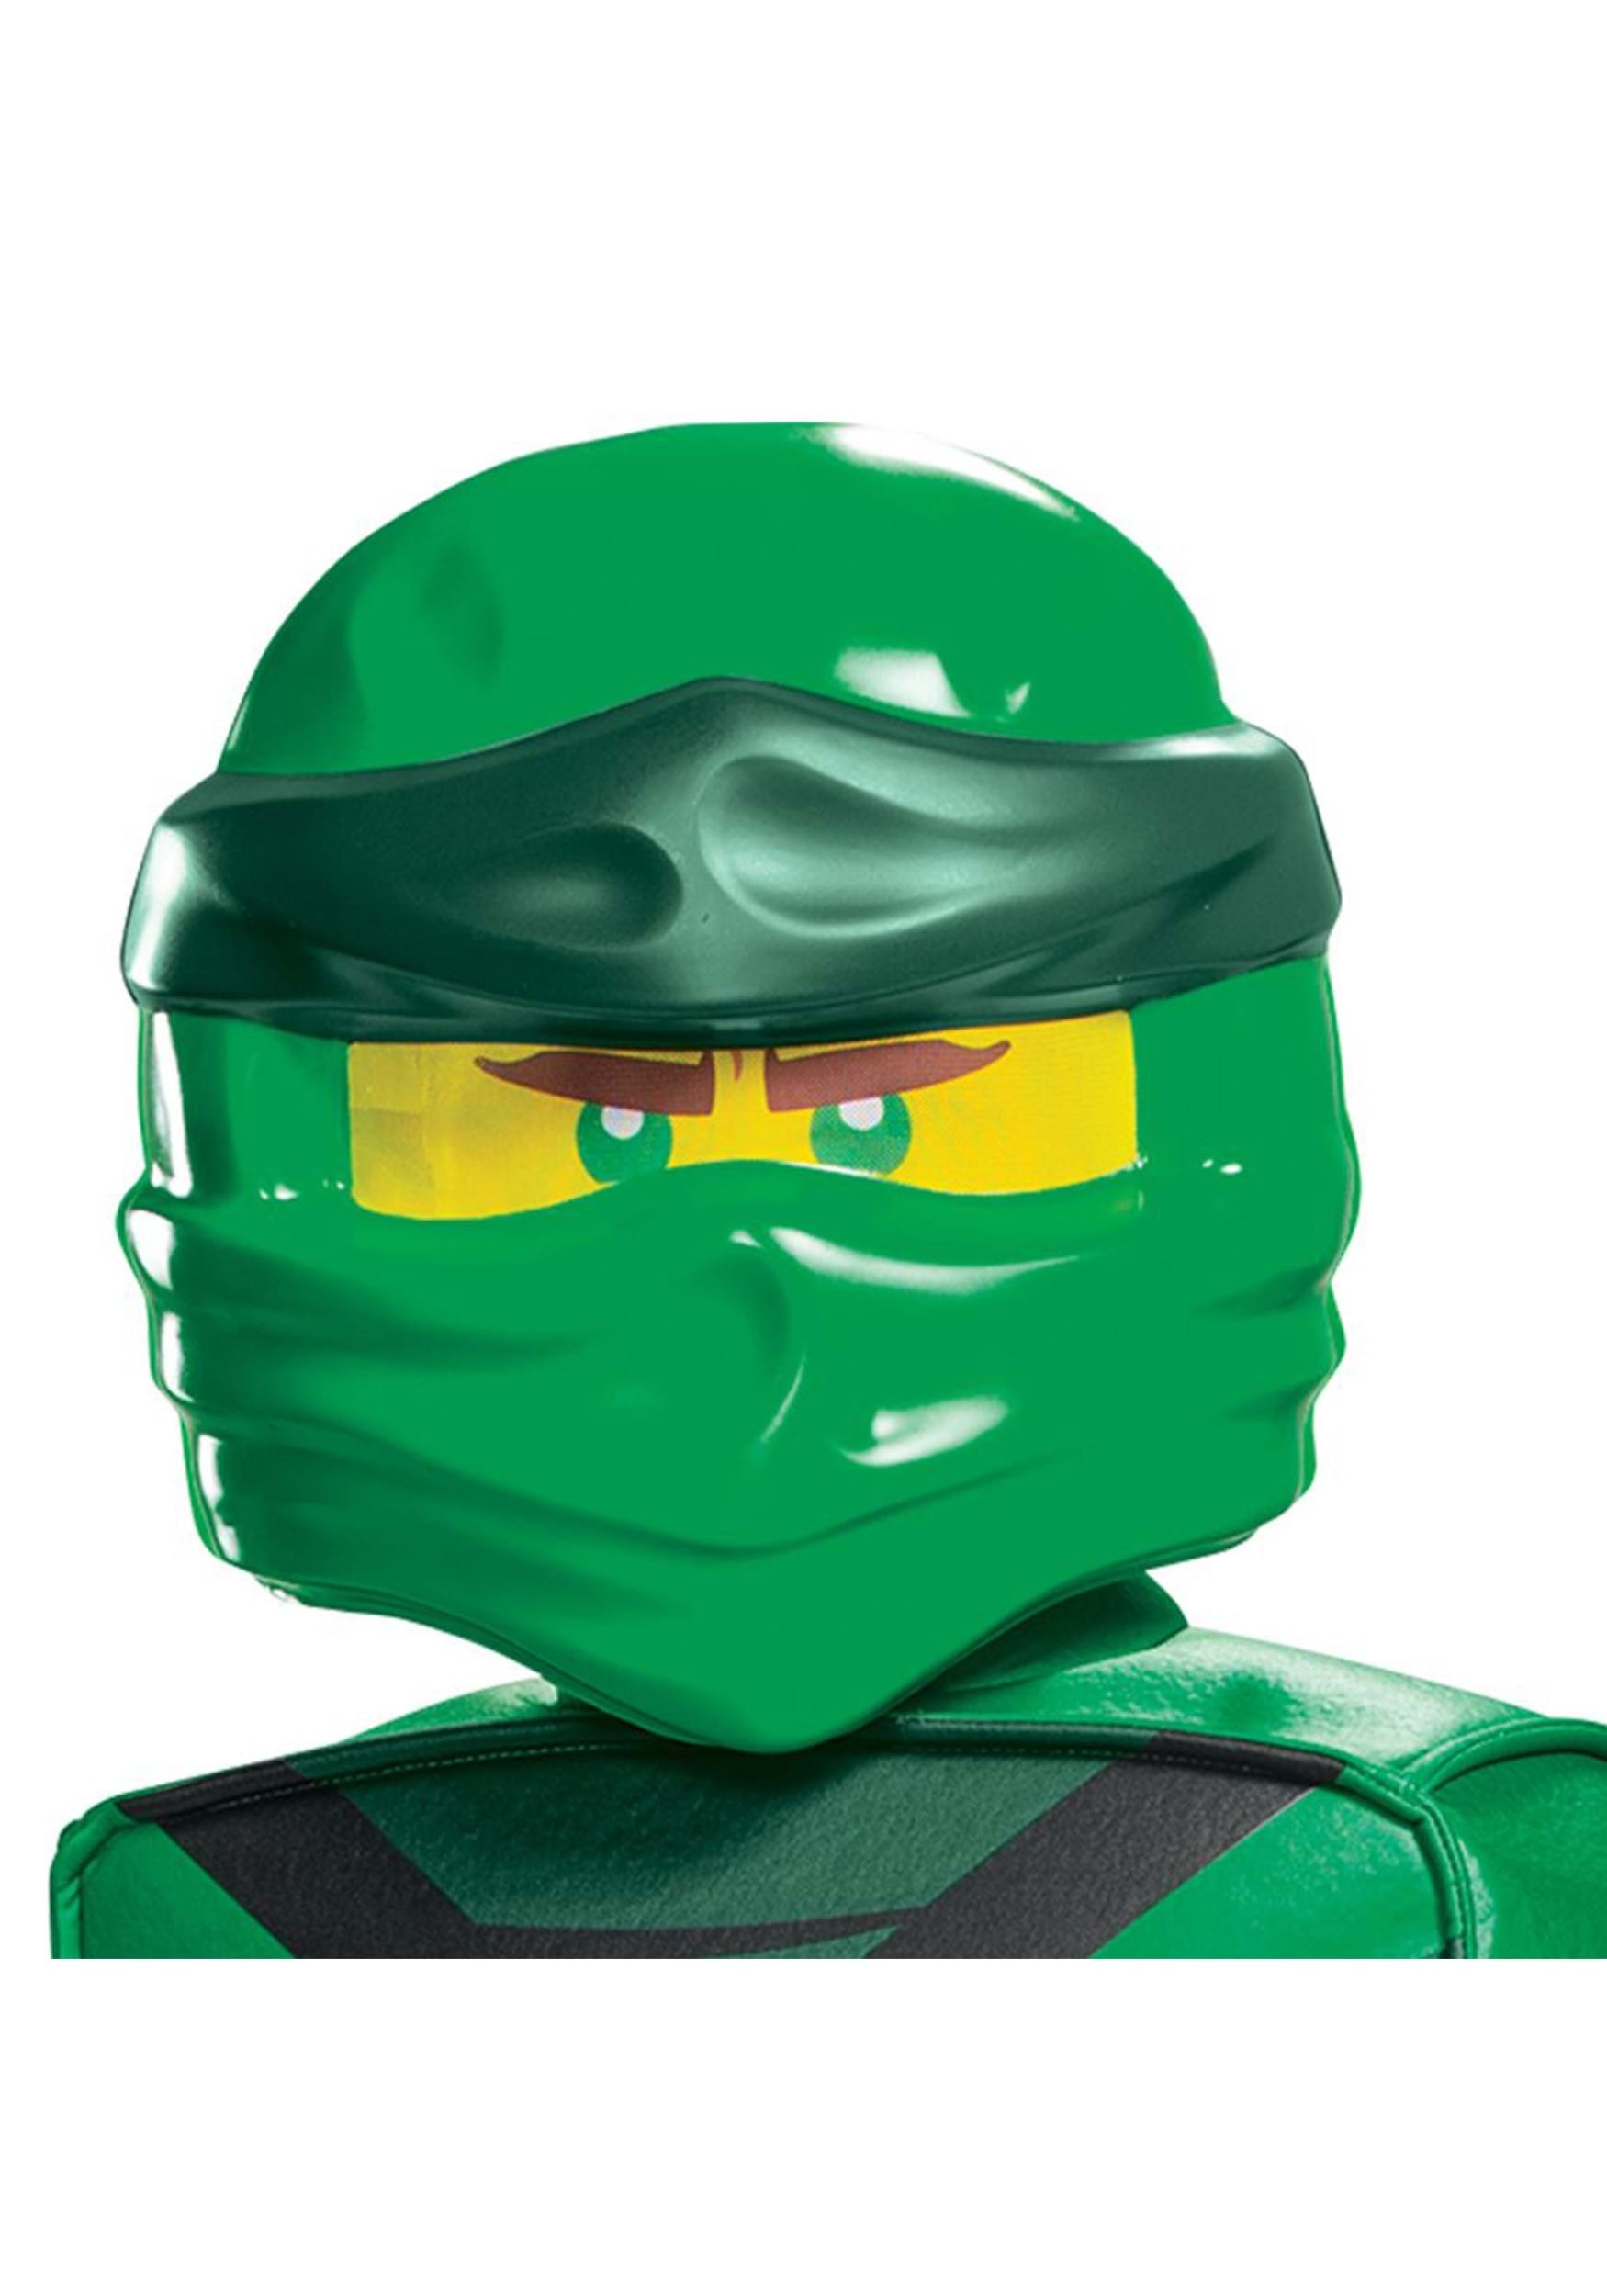 Boy's LEGO Ninjago Lloyd Legacy Prestige Fancy Dress Costume